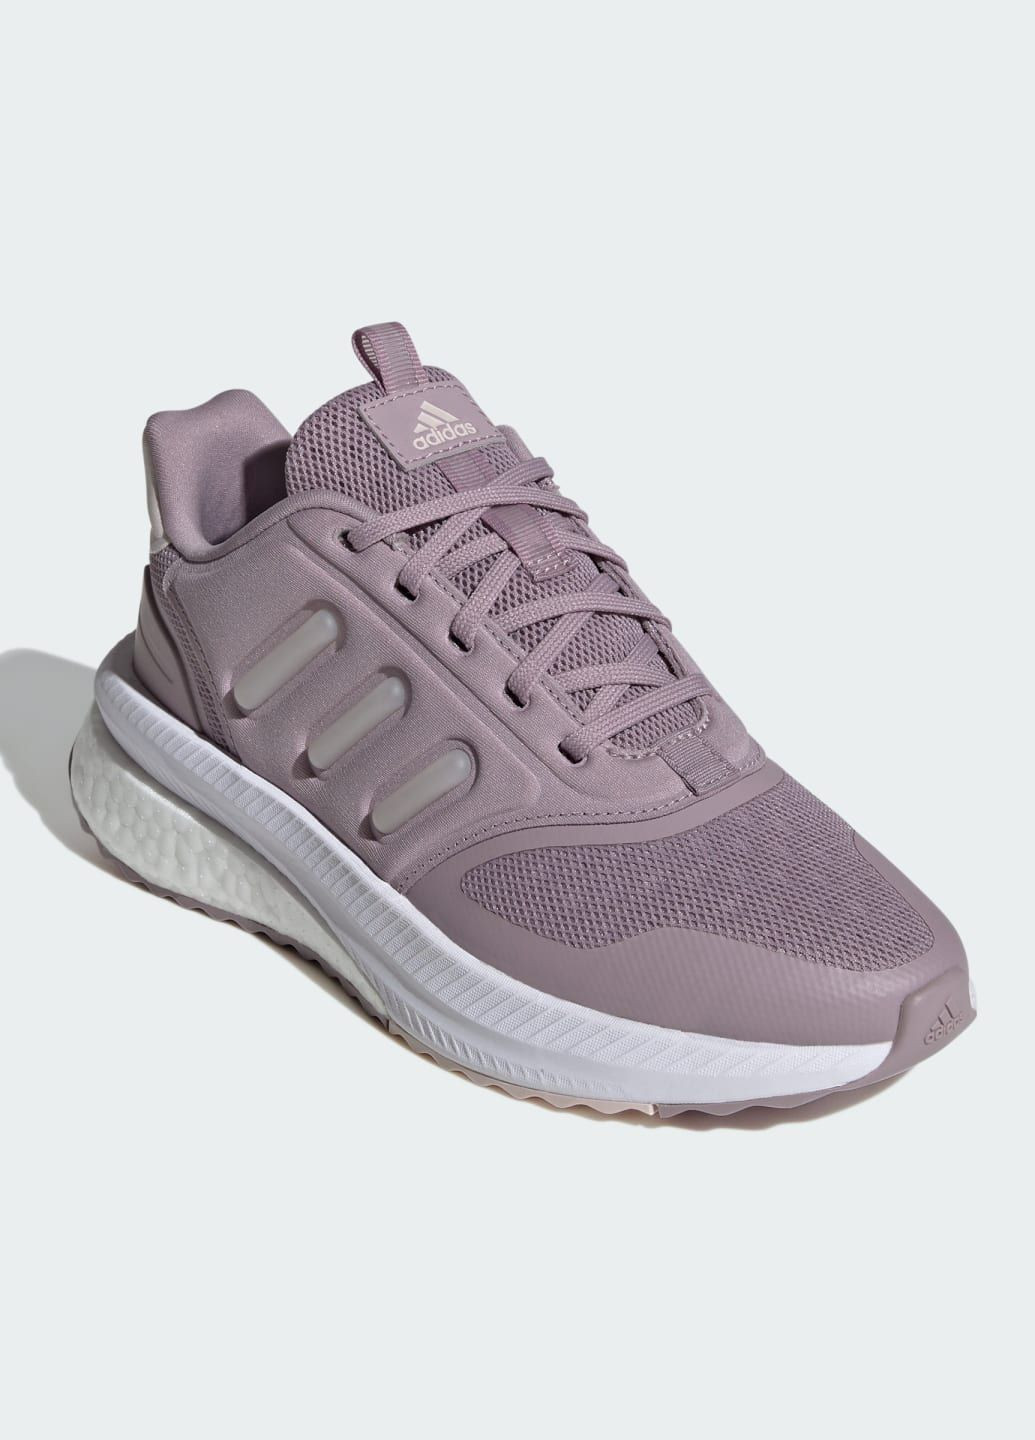 Фиолетовые всесезонные кроссовки x_plrphase adidas